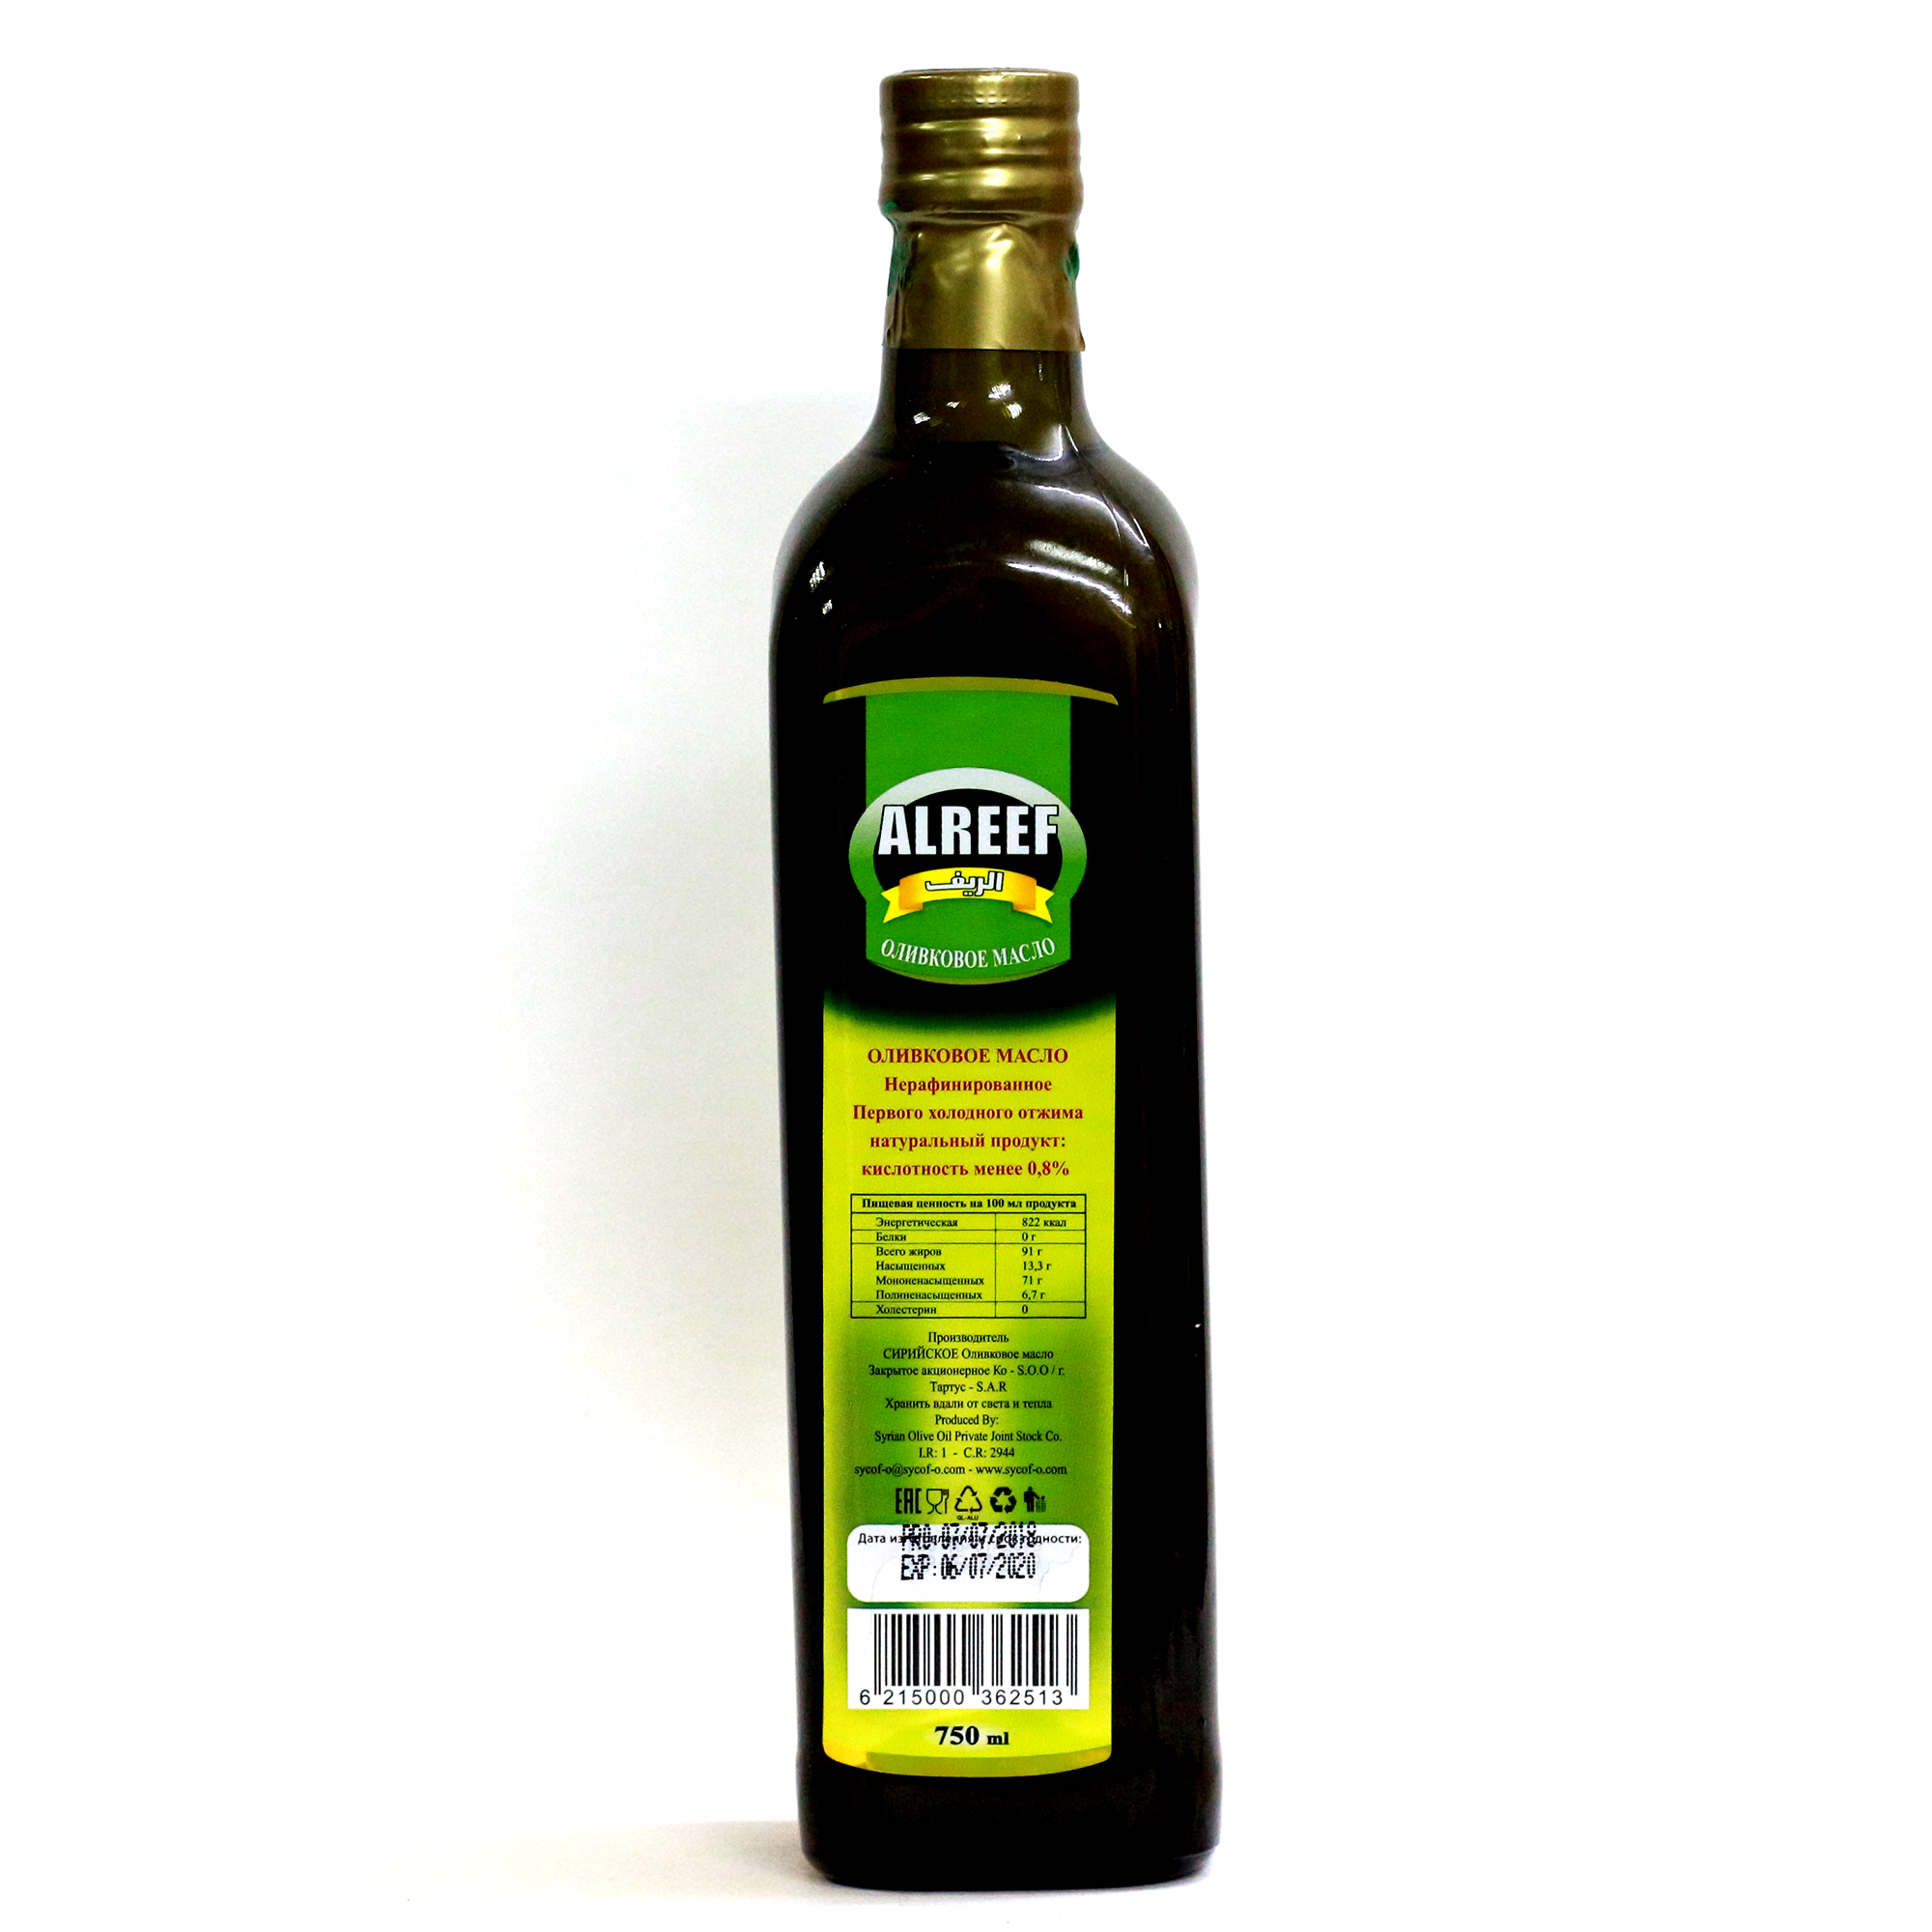 Можно жарить на оливковом масле холодного отжима. Оливковое масло Extra Virgin Olive Alreef. Оливковое масло Alreef 500 ml. Оливковое масло холодного отжима Extra Virgin. Оливковое масло Экстра Вирджин холодного отжима.